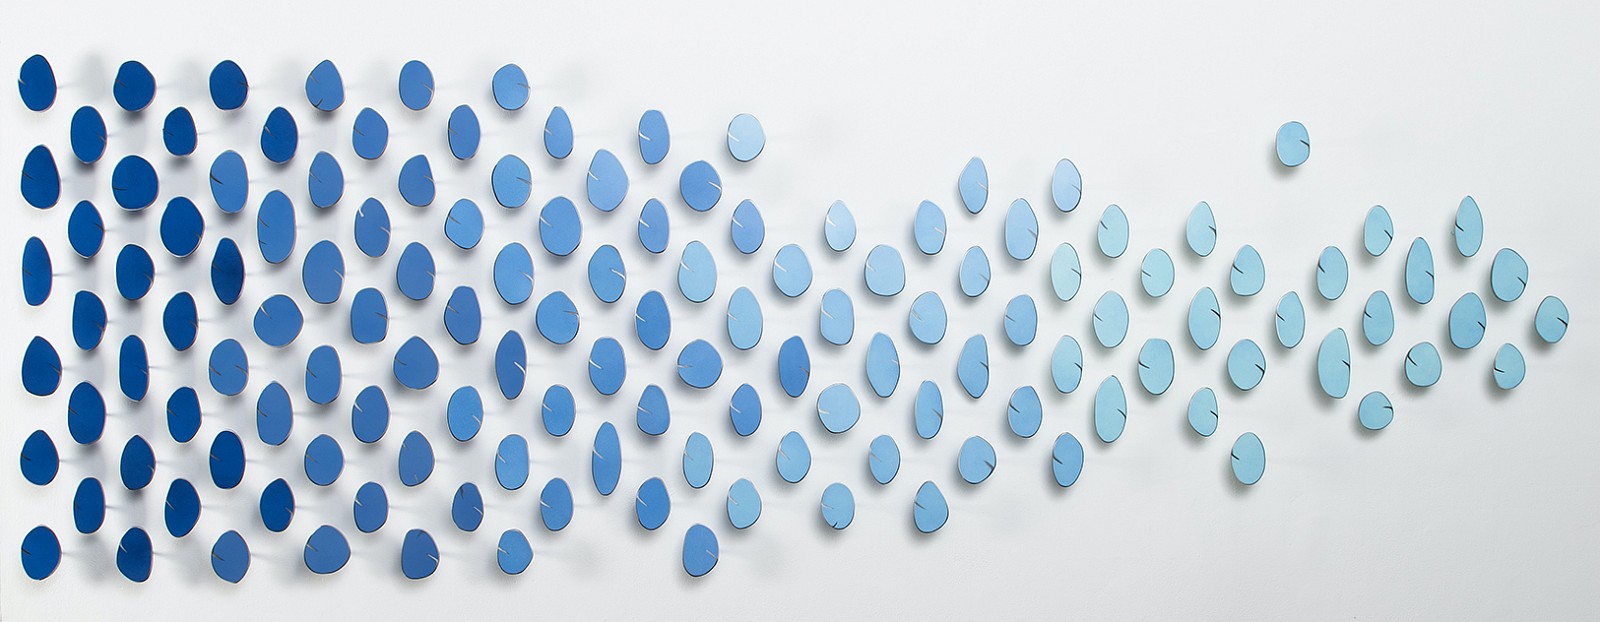 Carolina Sardi, Blue Too
Steel, 38 3/4 x 118 in.